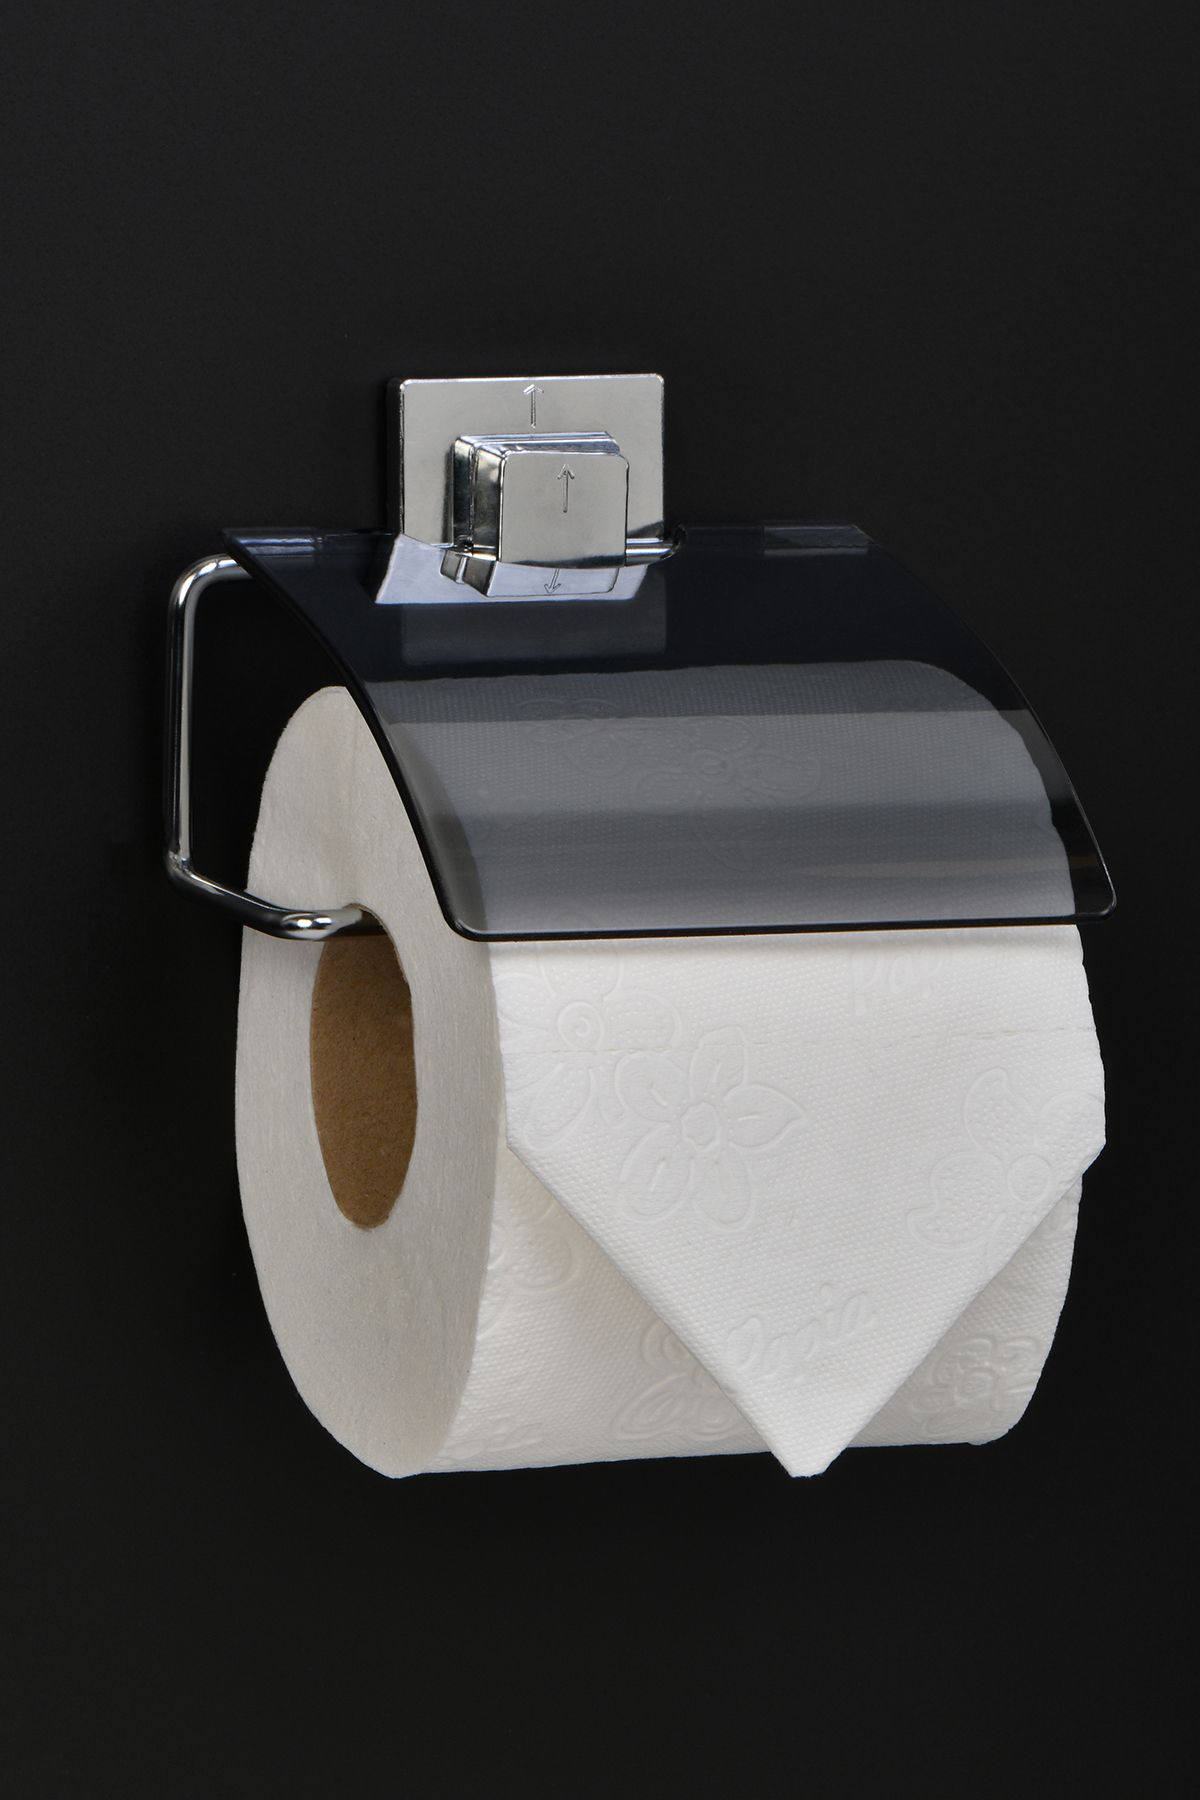 Hagen Yapışkanlı Tuvalet Kağıtlığı, tuvalet kağitliği, banyo aksesuarları